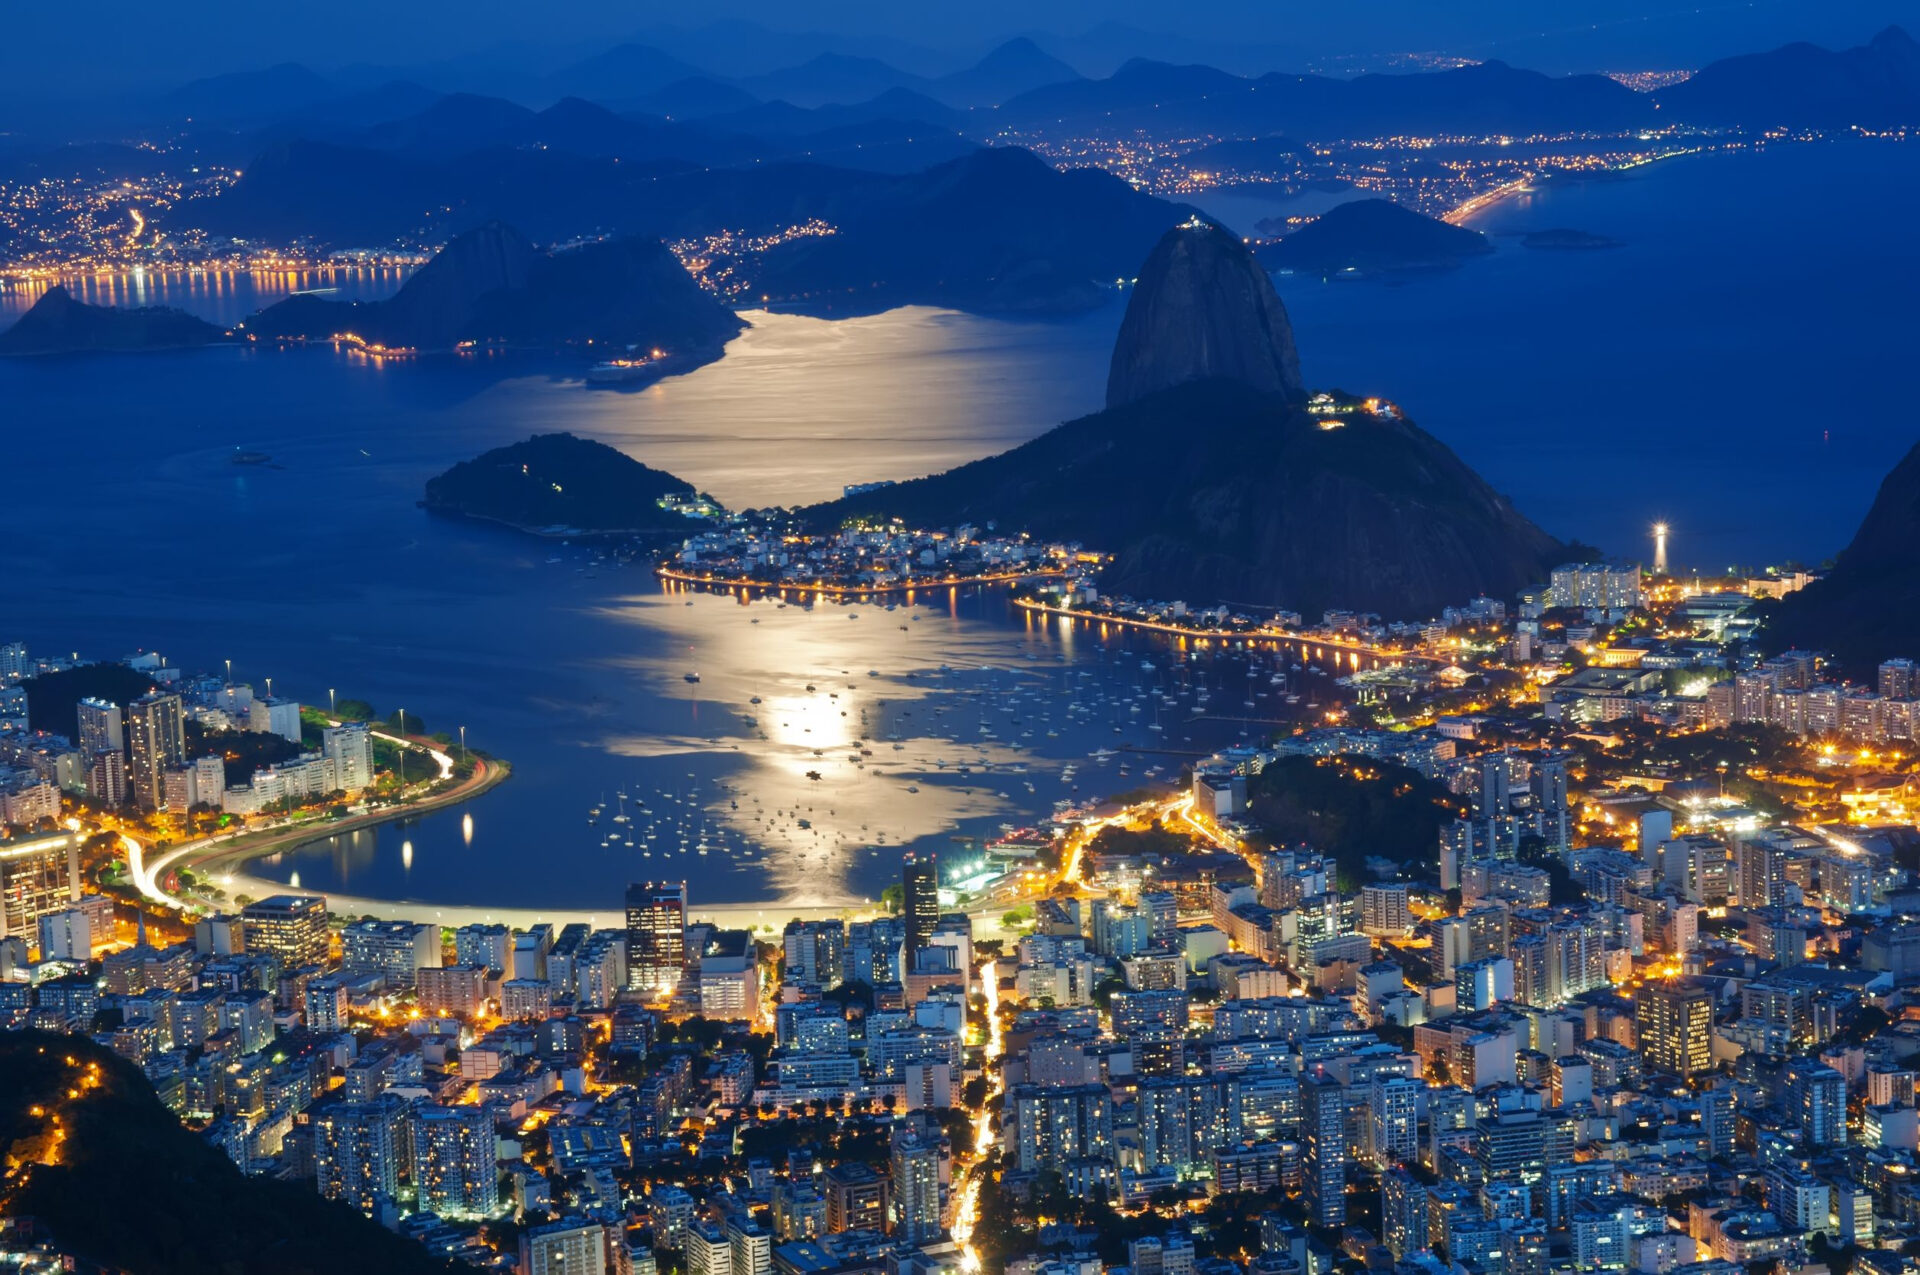 Escape to Rio